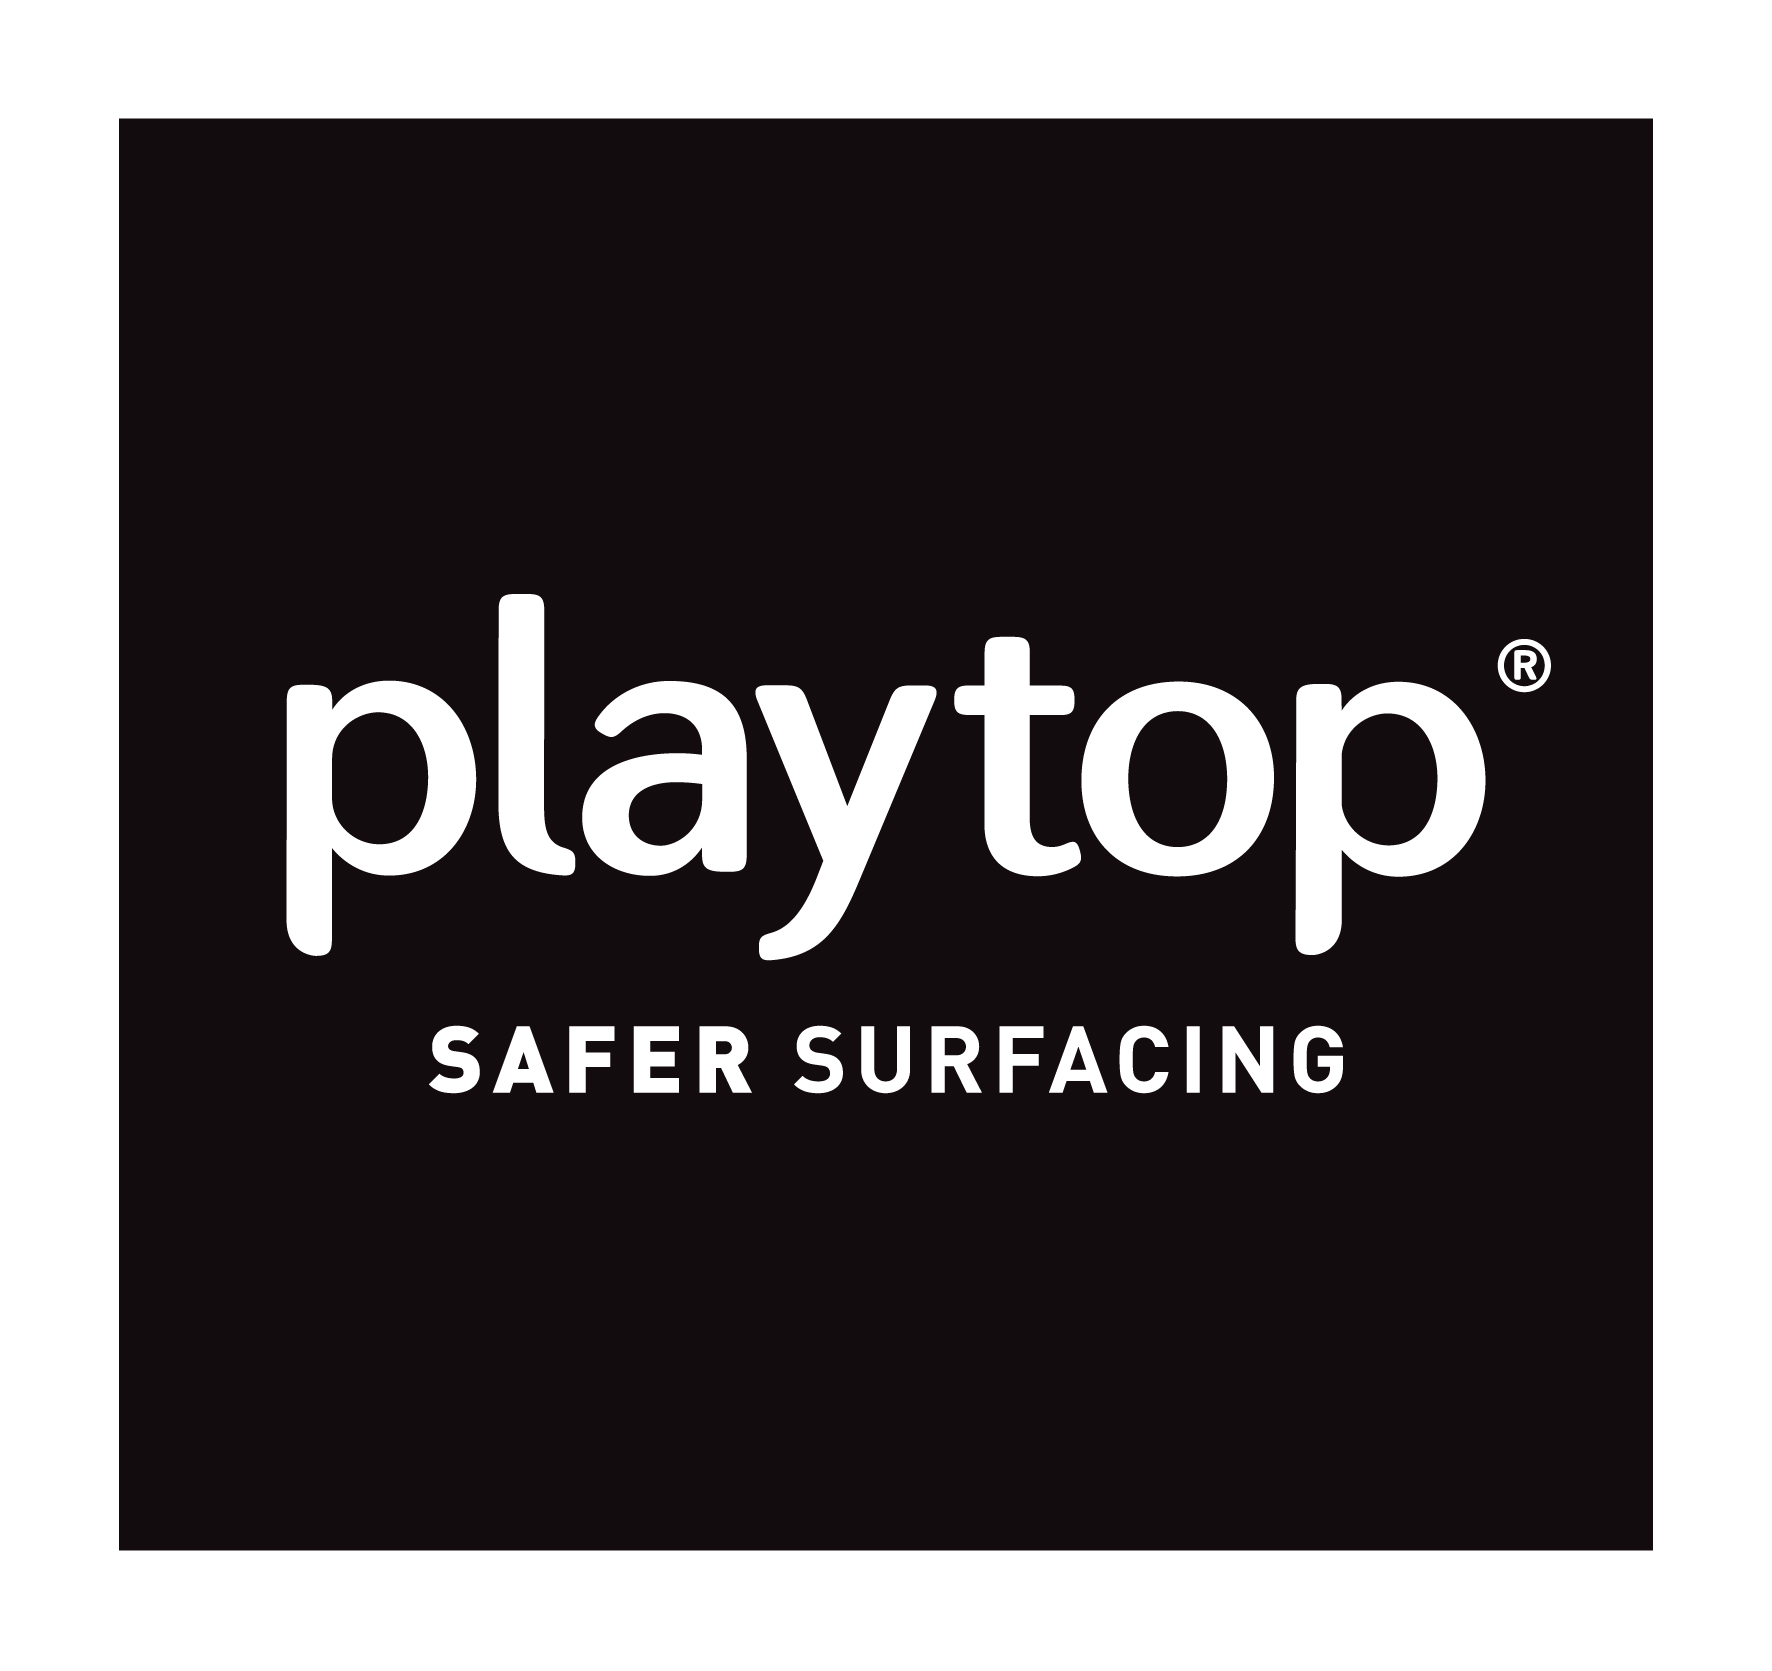 Playtop Ltd